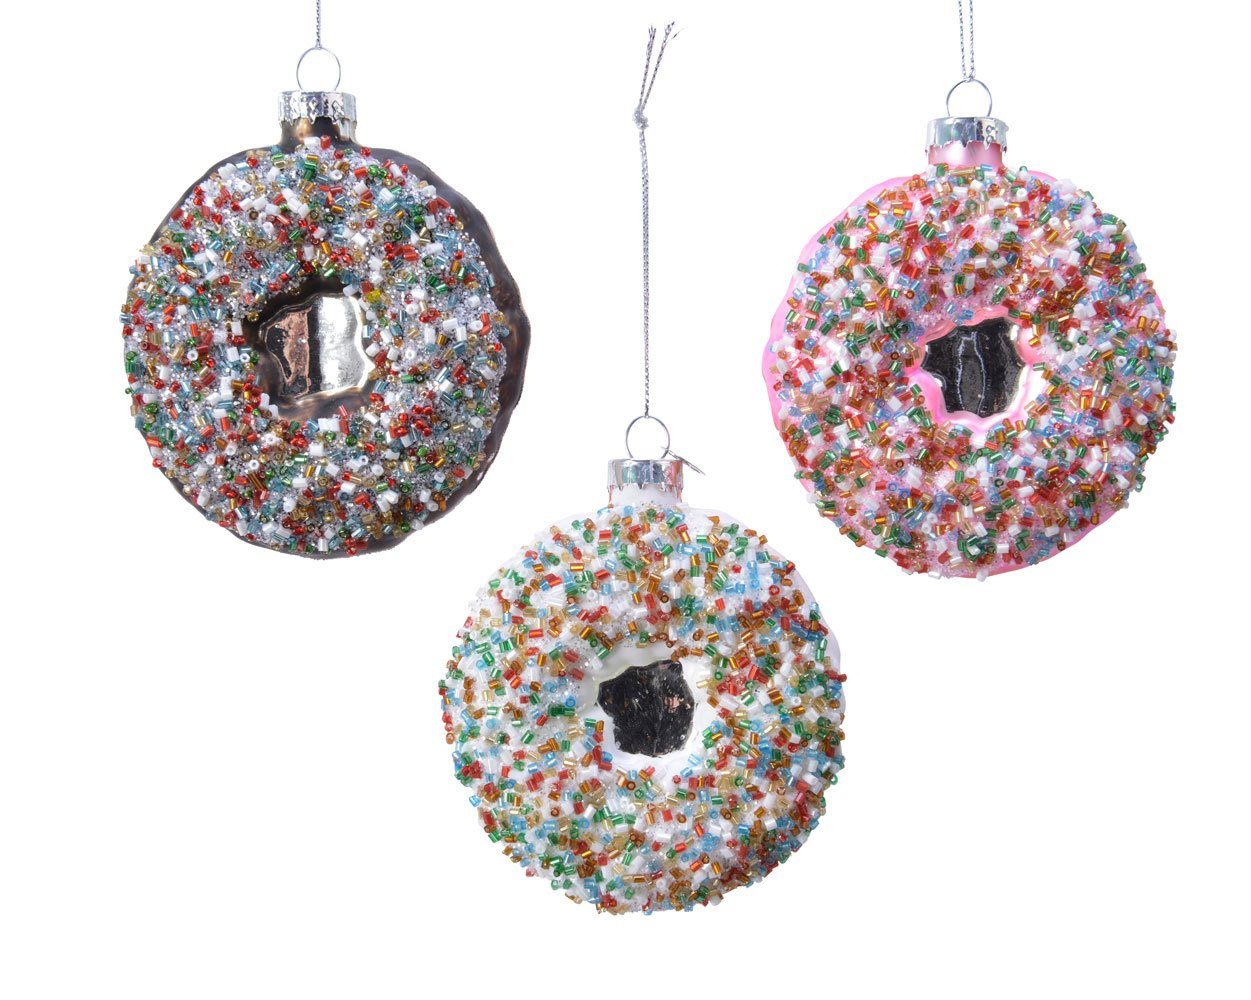 Decoris season decorations Christbaumschmuck, Christbaumschmuck Glas Donut 9cm, 1 Stück sortiert